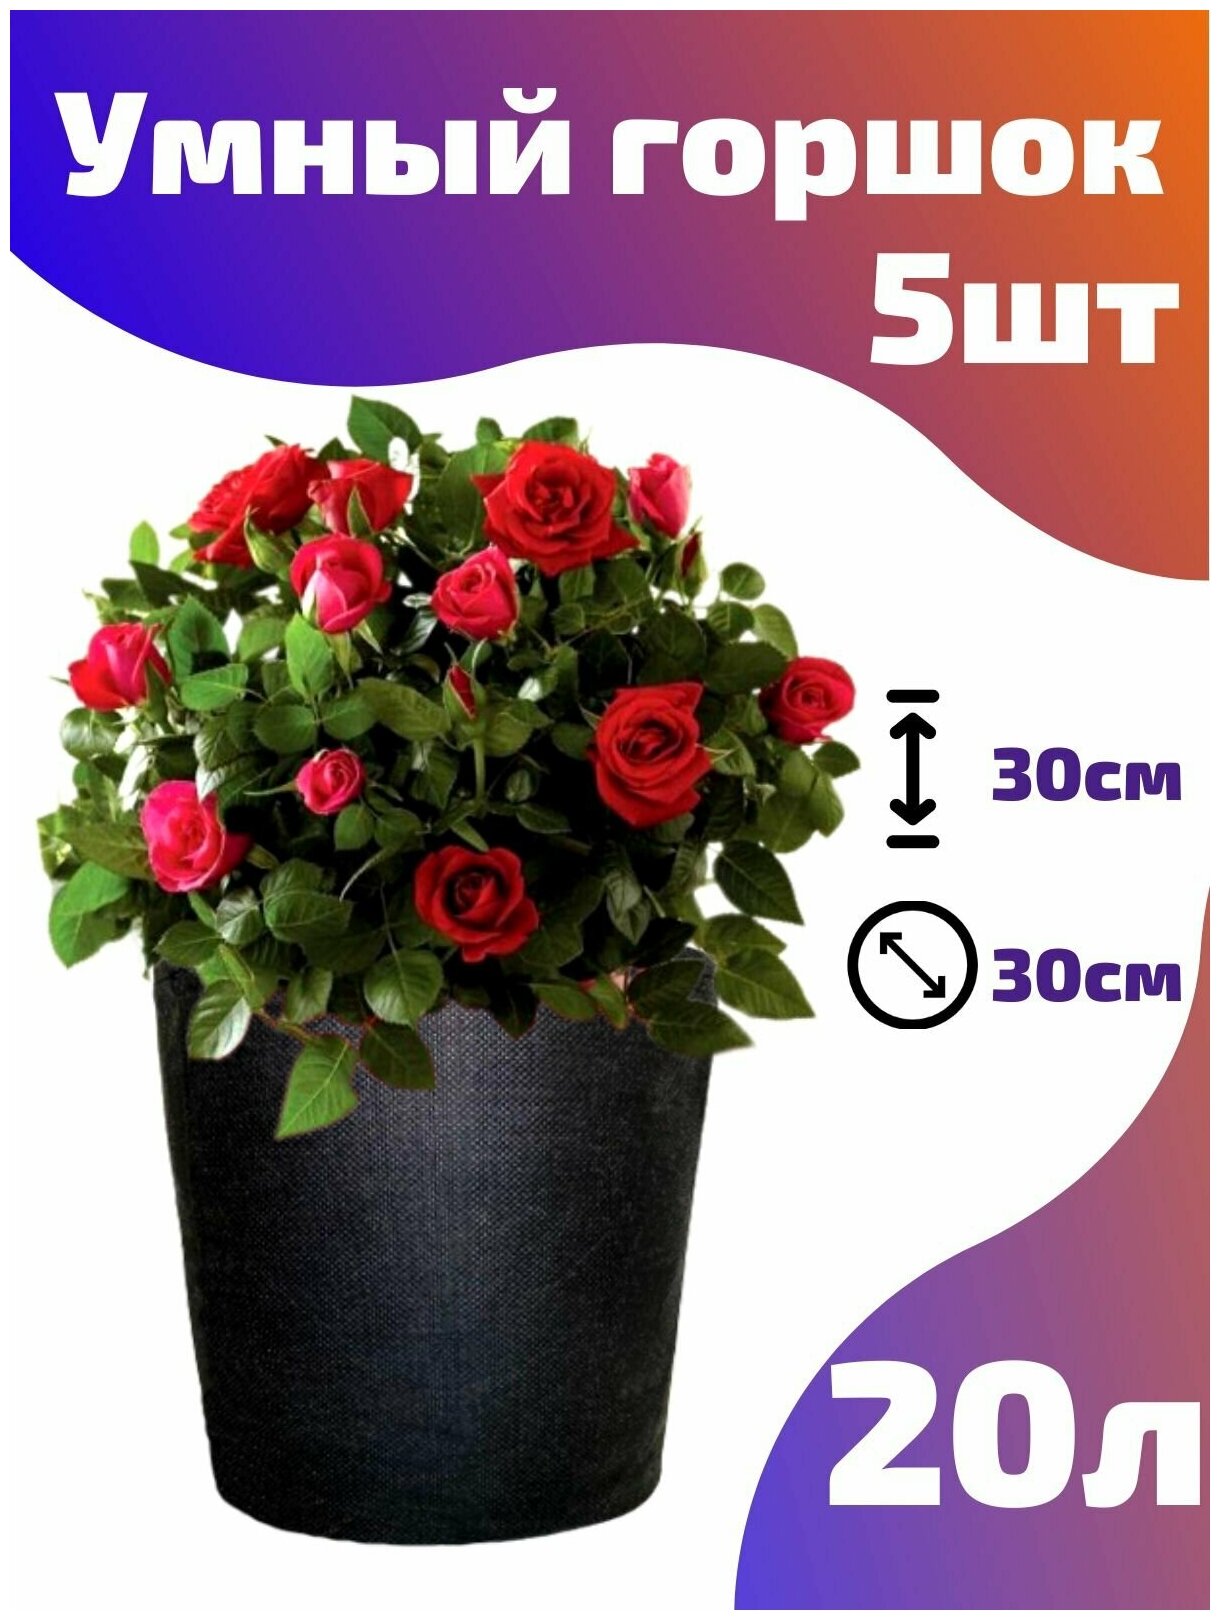 Горшок текстильный для рассады, растений, цветов Smart Pot - 20 л 5 шт.